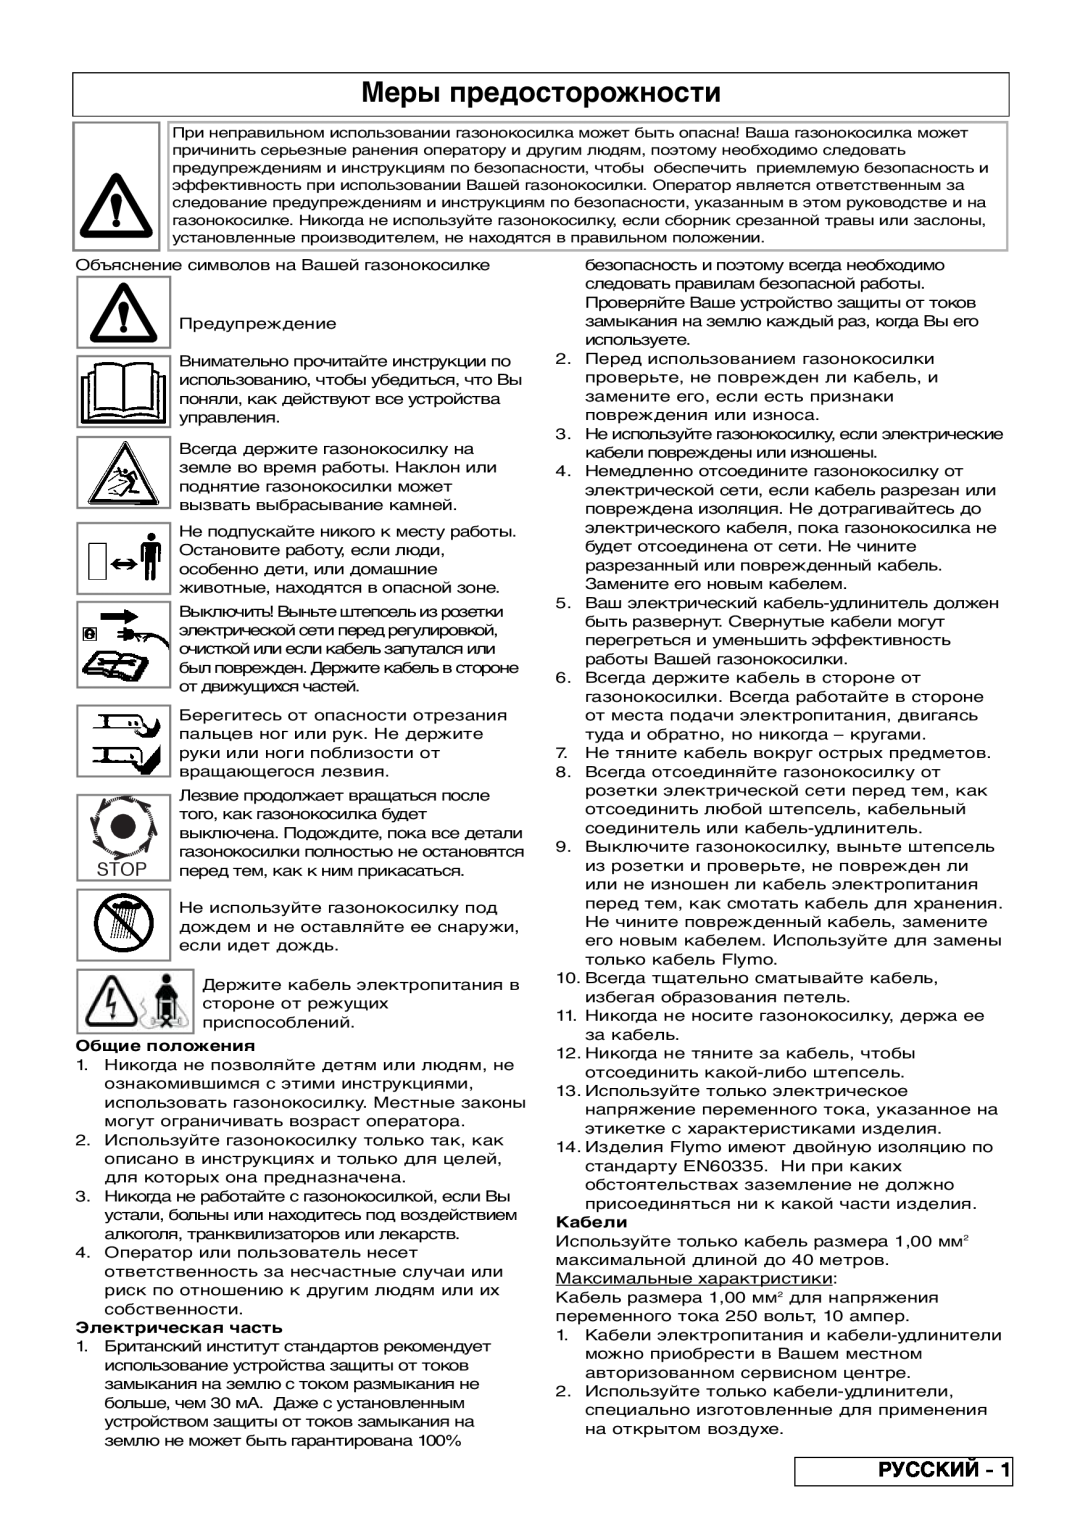 Flymo VM032 manual Меры предосторожности, Русский, Stop, Общие положения, Электрическая часть, Кабели 